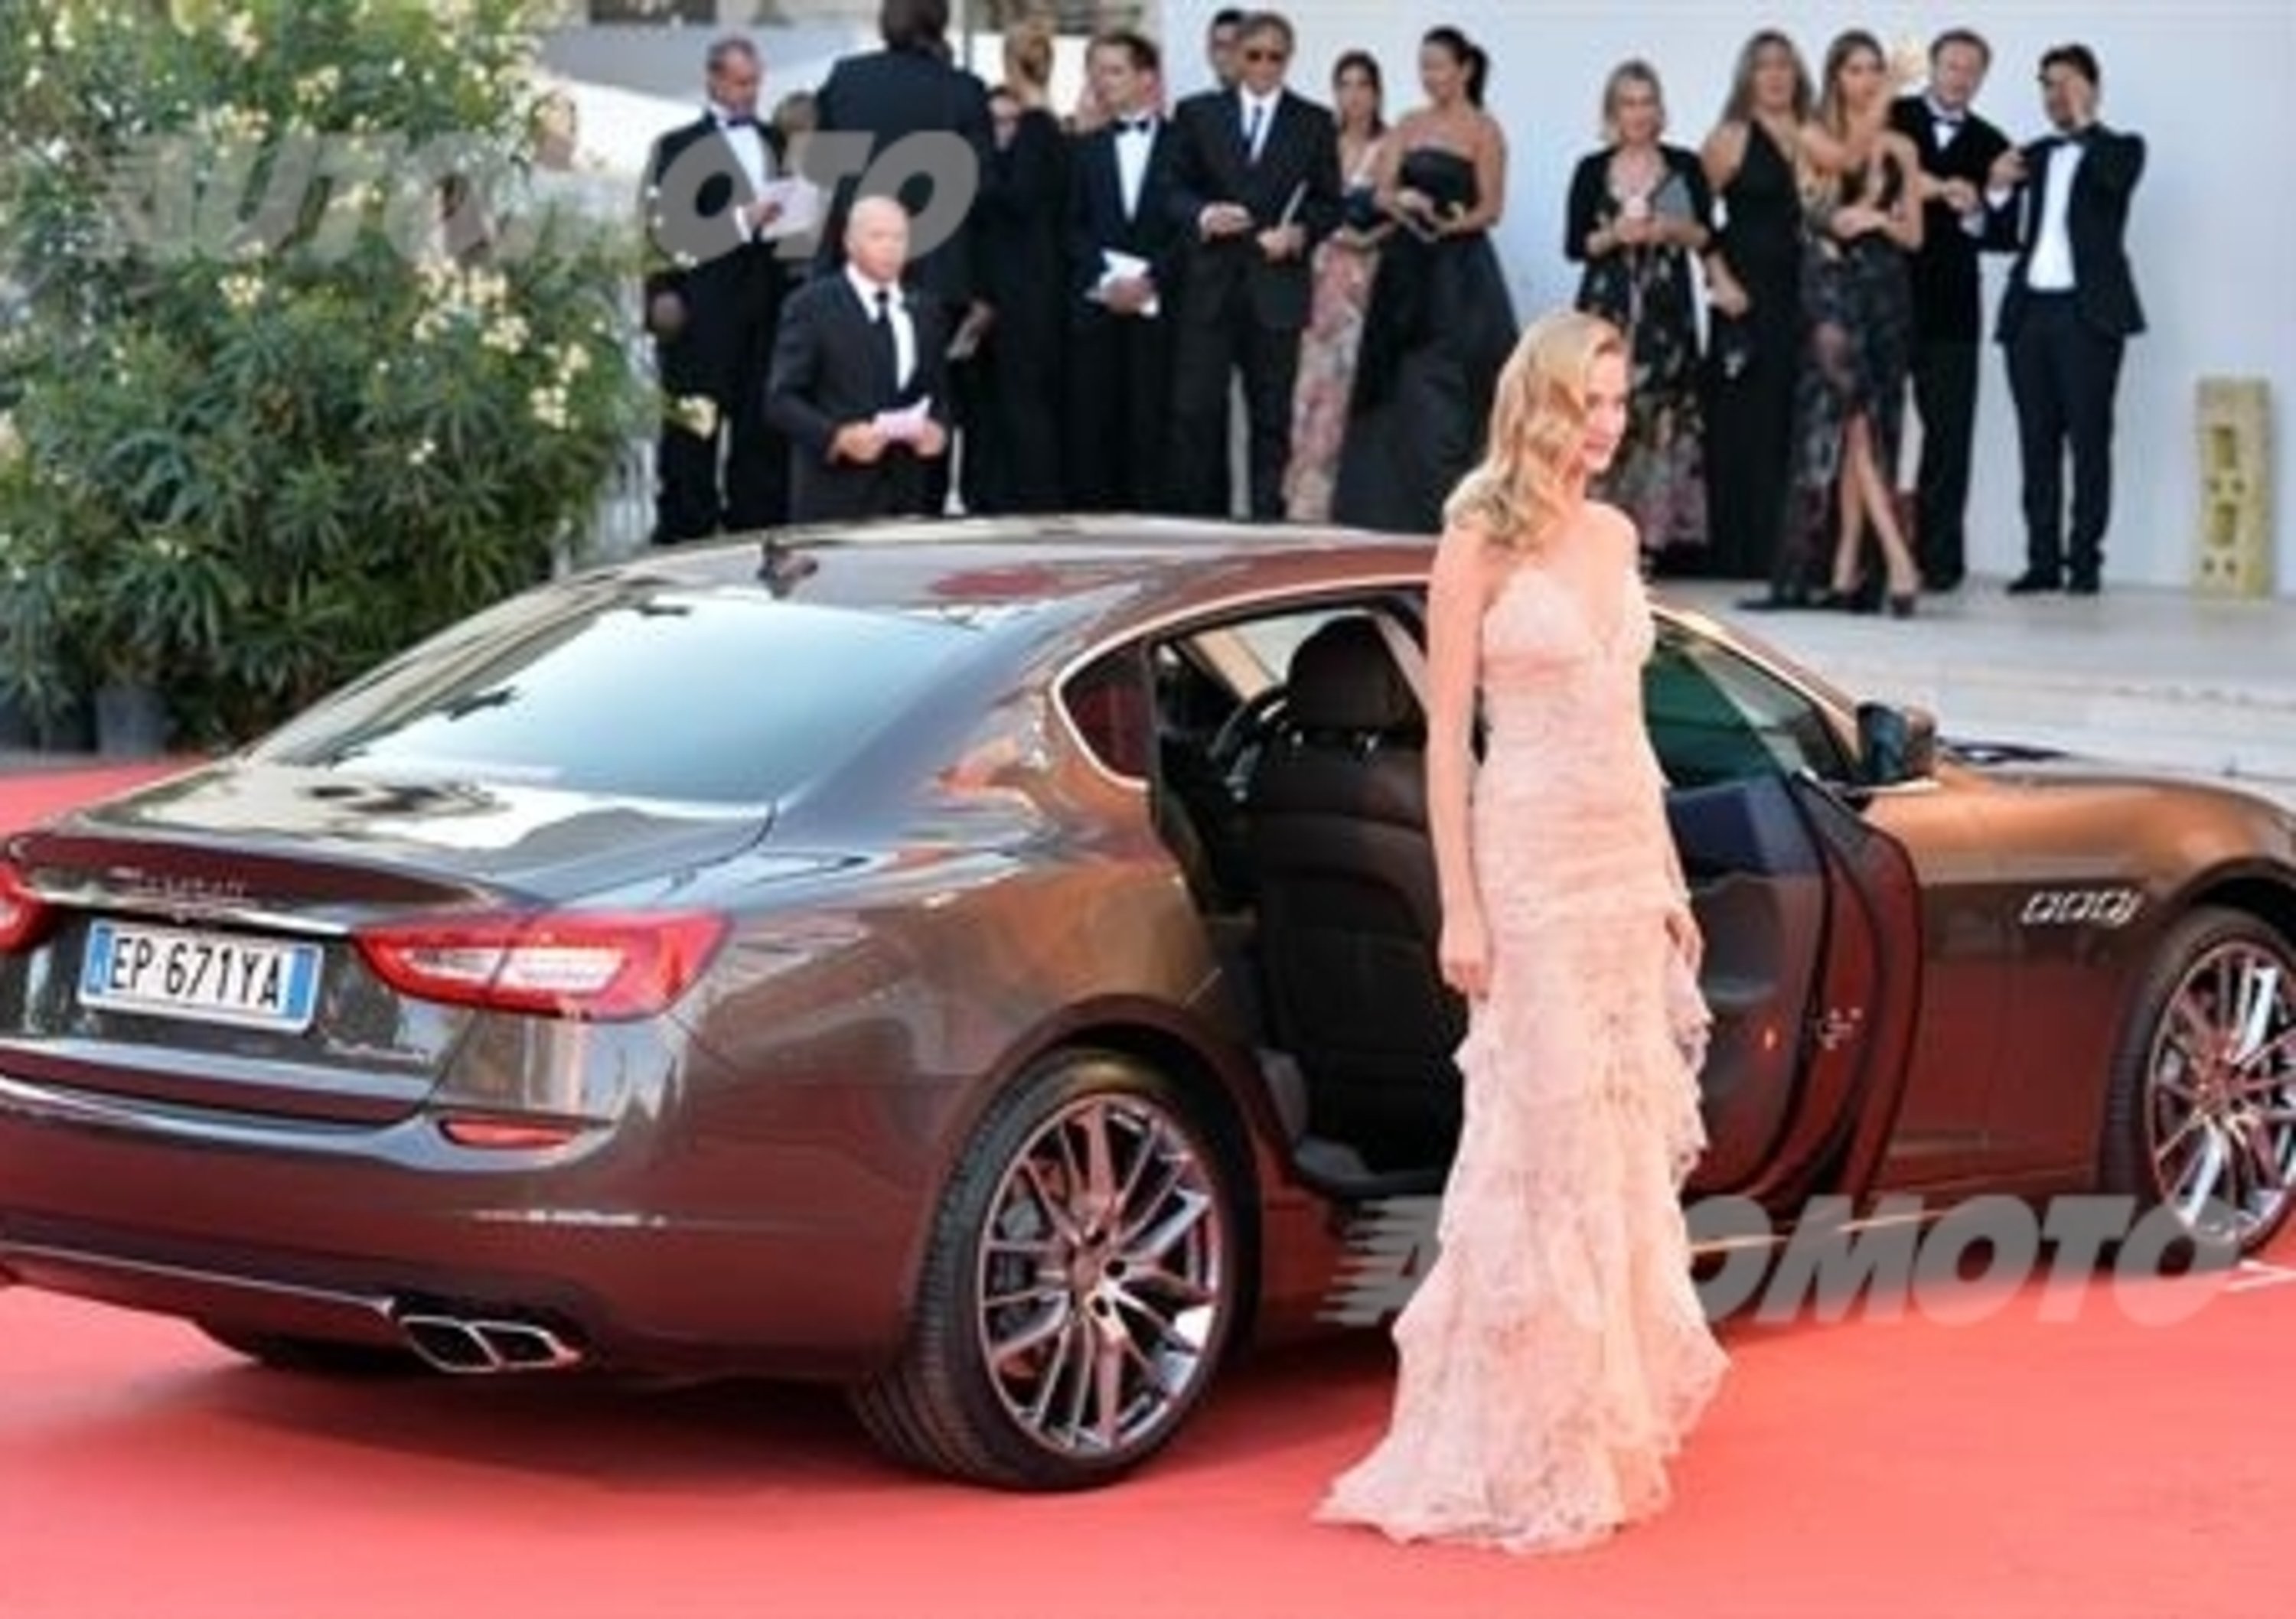 Maserati main sponsor della Mostra del Cinema di Venezia 2013